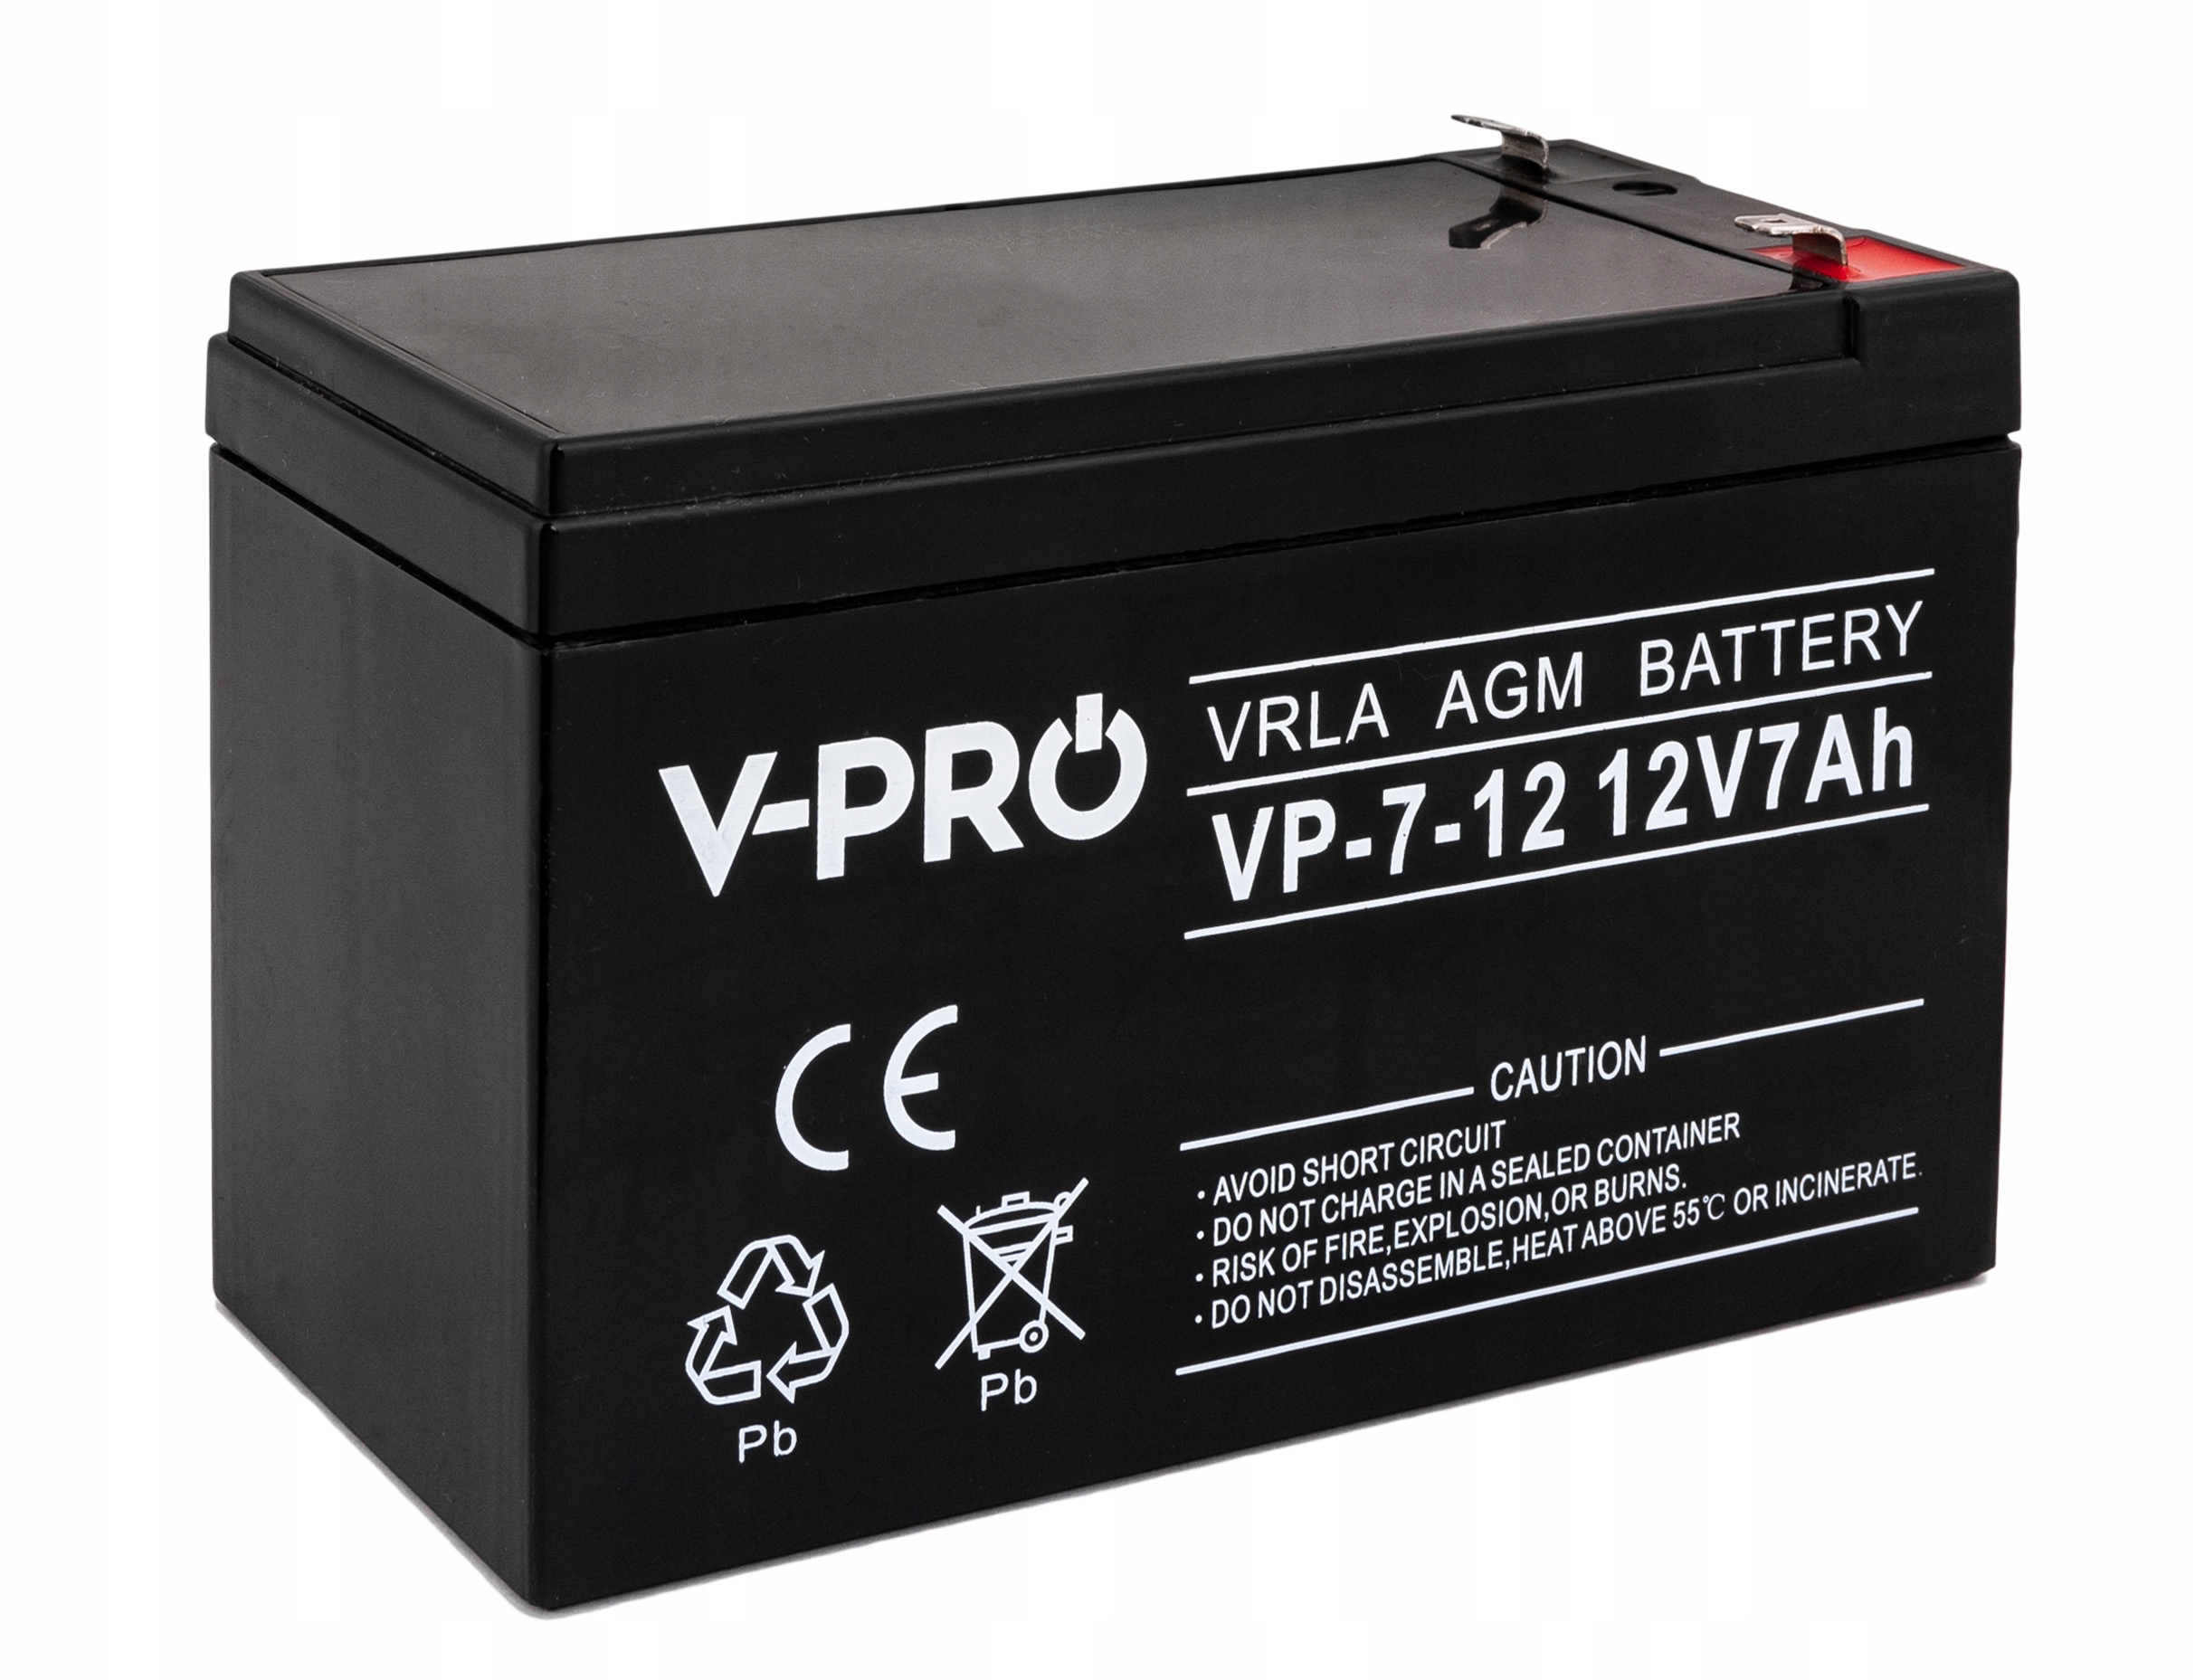 Акб agm 12v. Аккумулятор AGM 7ah. AGM VRLA Battery 12v 7ah. 12v 7ah аккумулятор для Кситал. Аккумулятор 12ah 12 вольт.